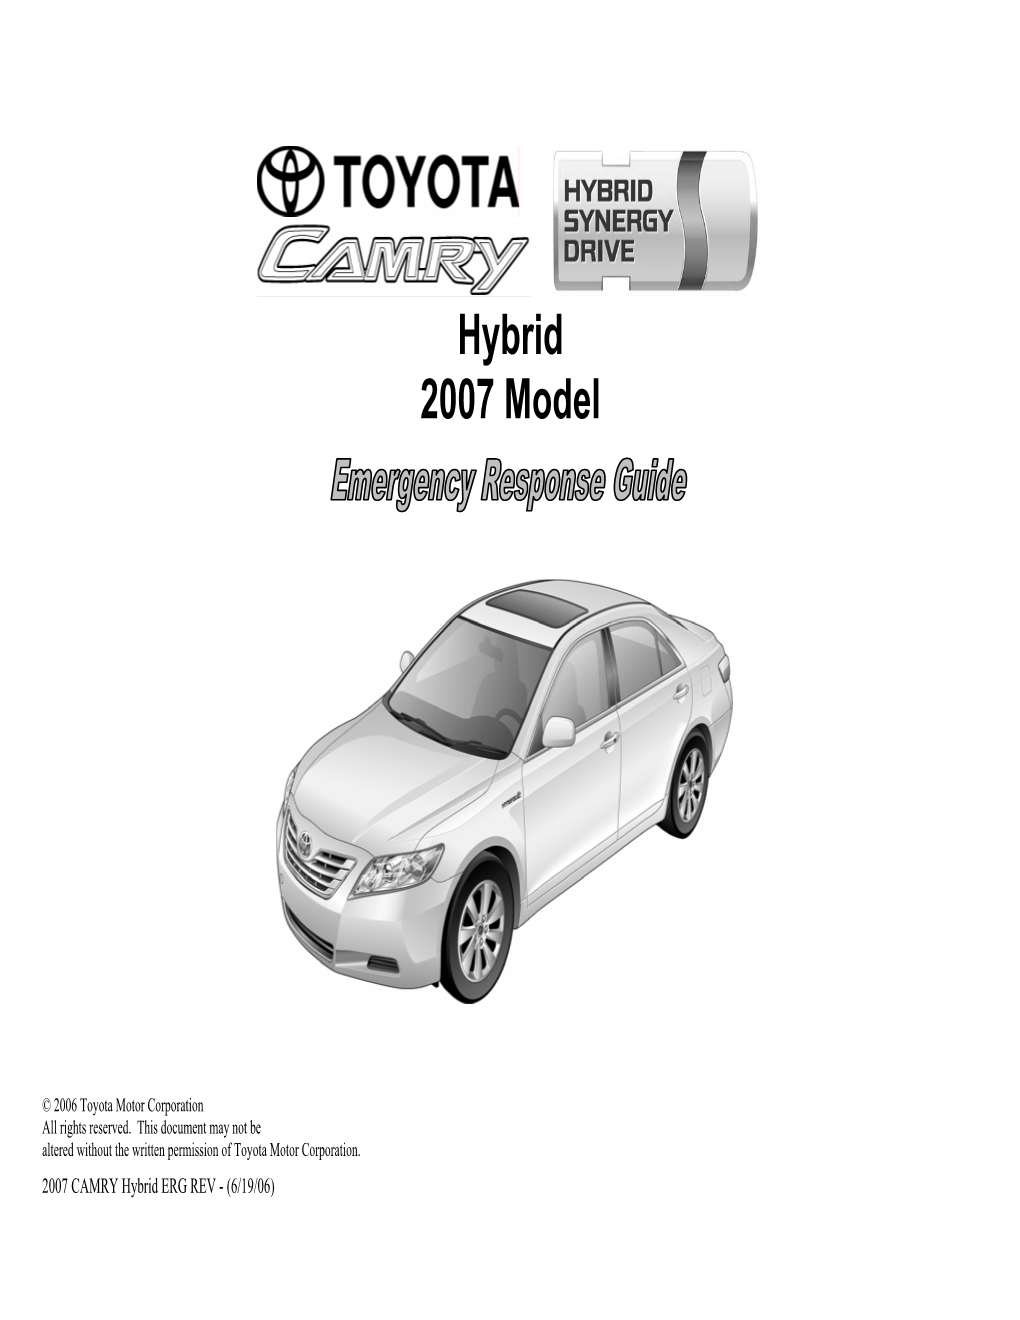 Toyota CAMRY Hybrid Identification